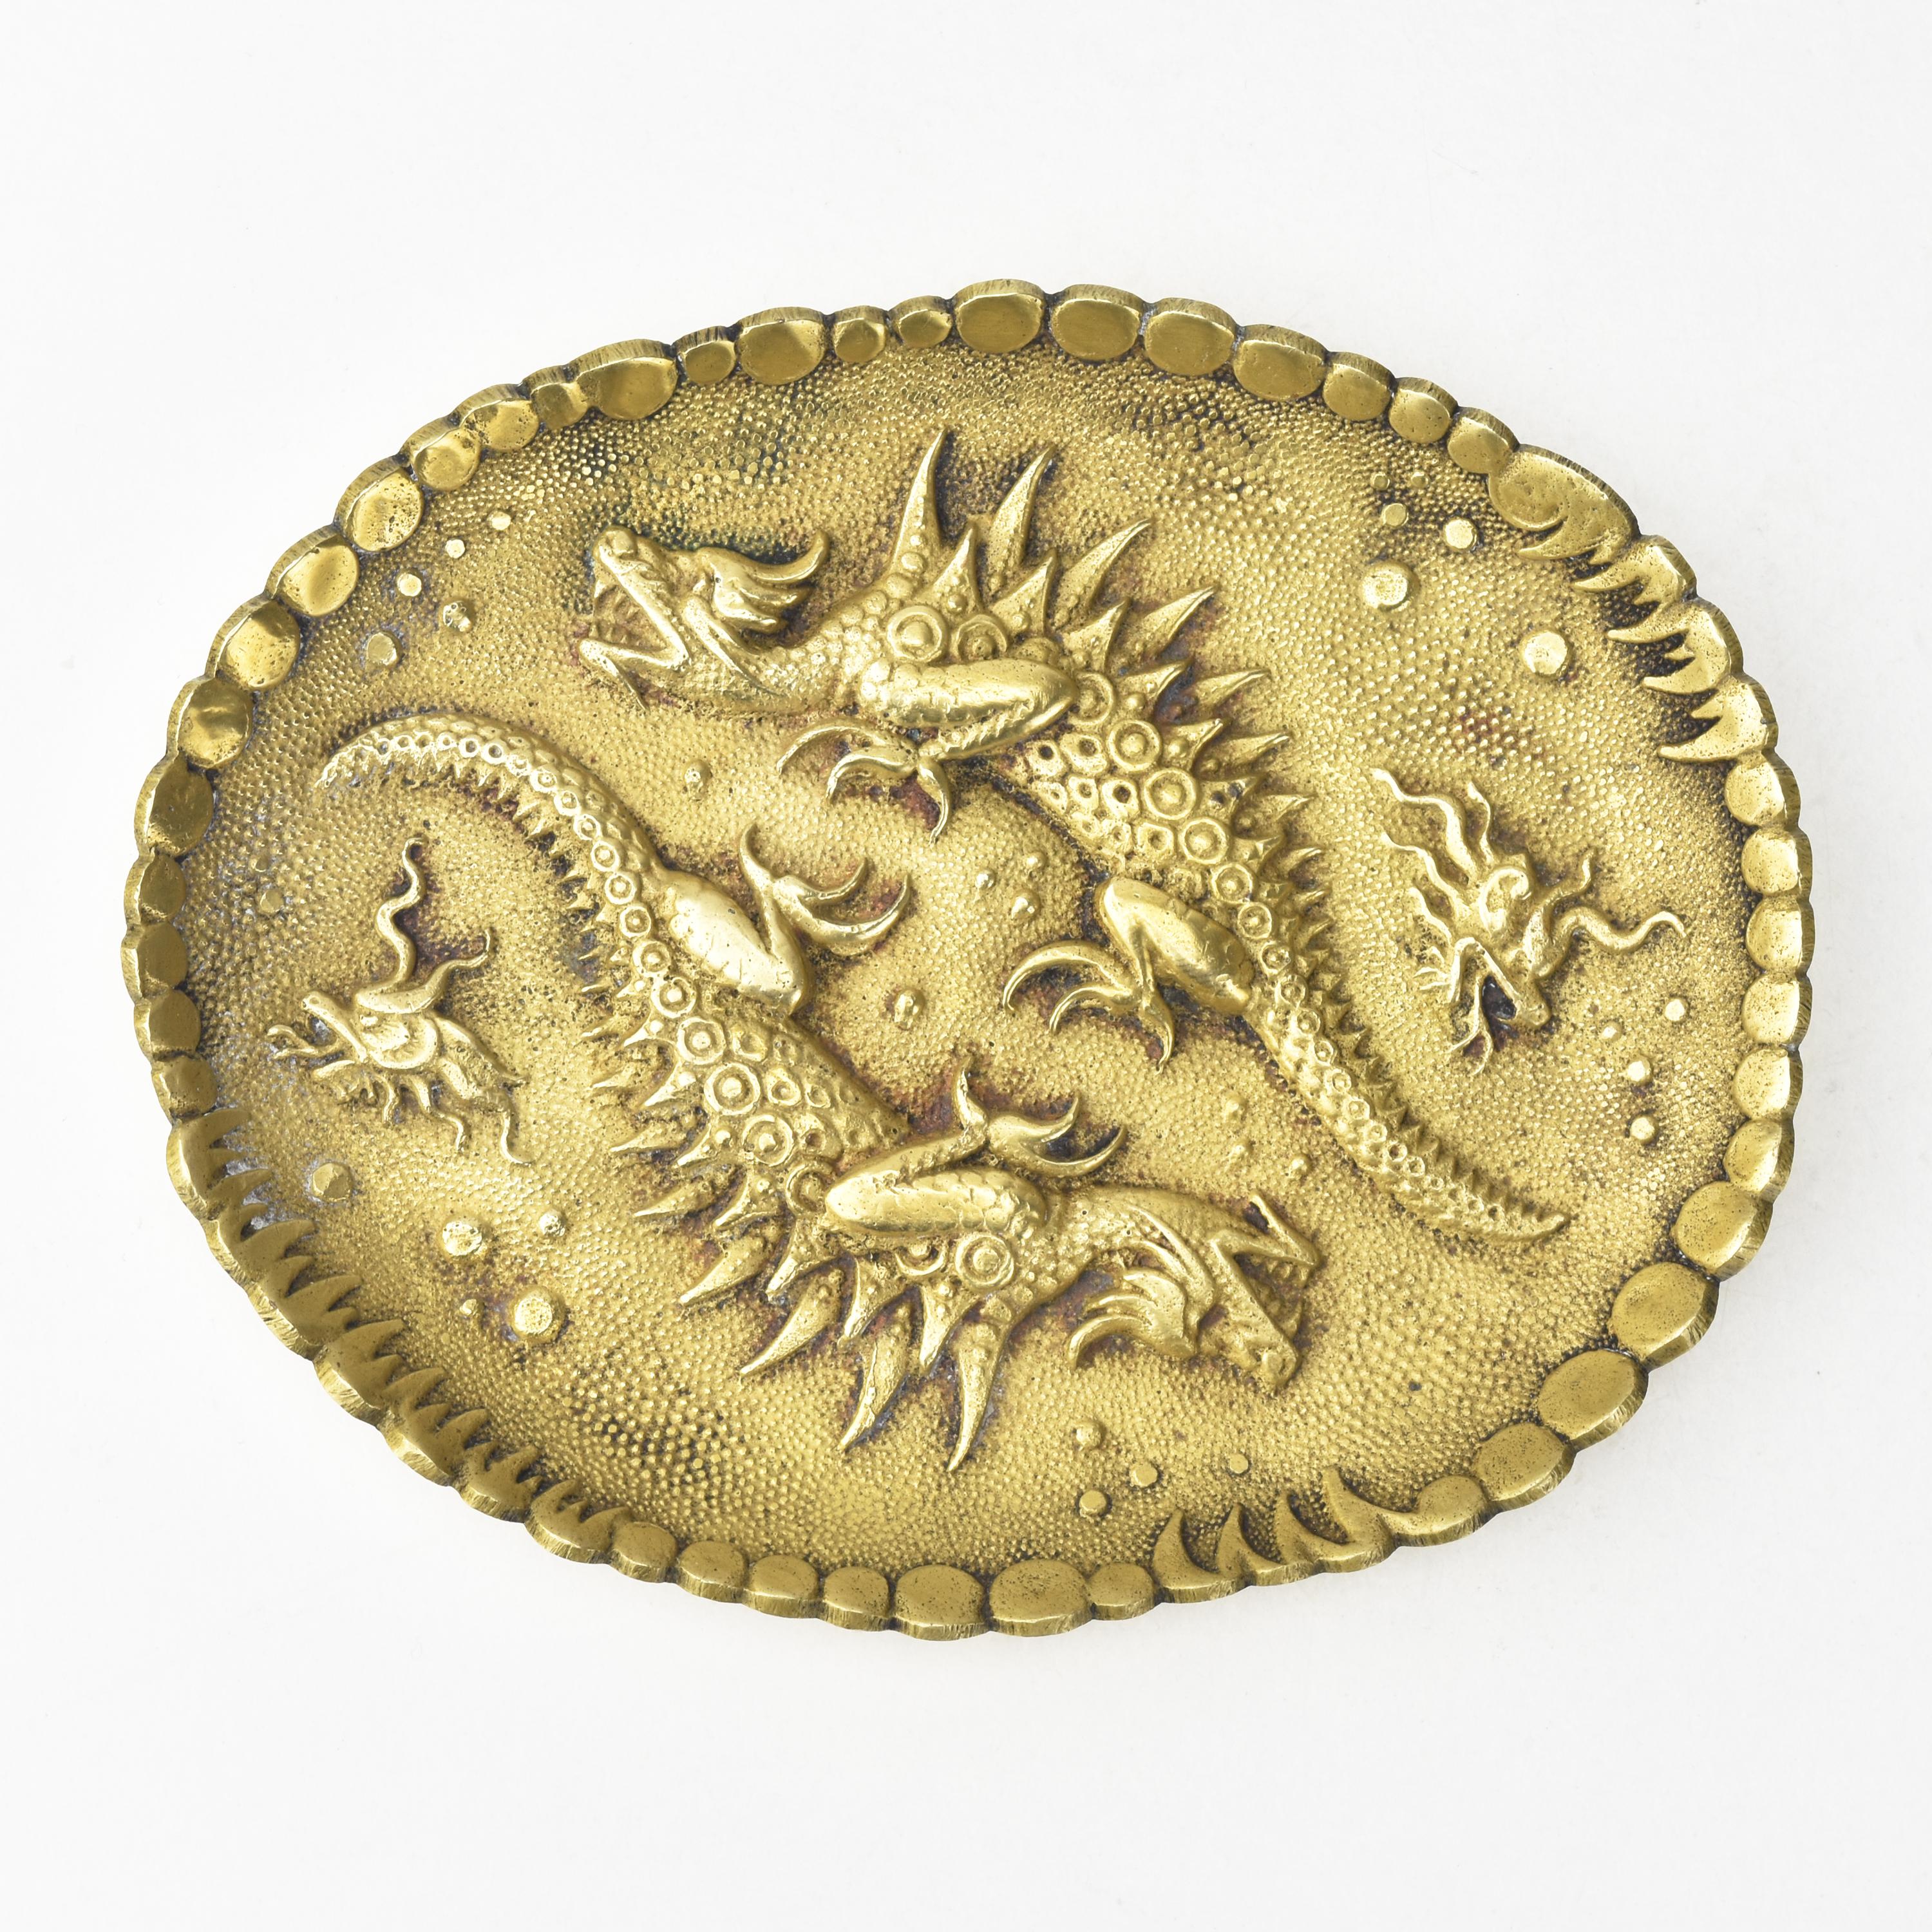 Das antike Jugendstil-Kartentablett aus französischer Bronze, auch bekannt als Vide-Poche